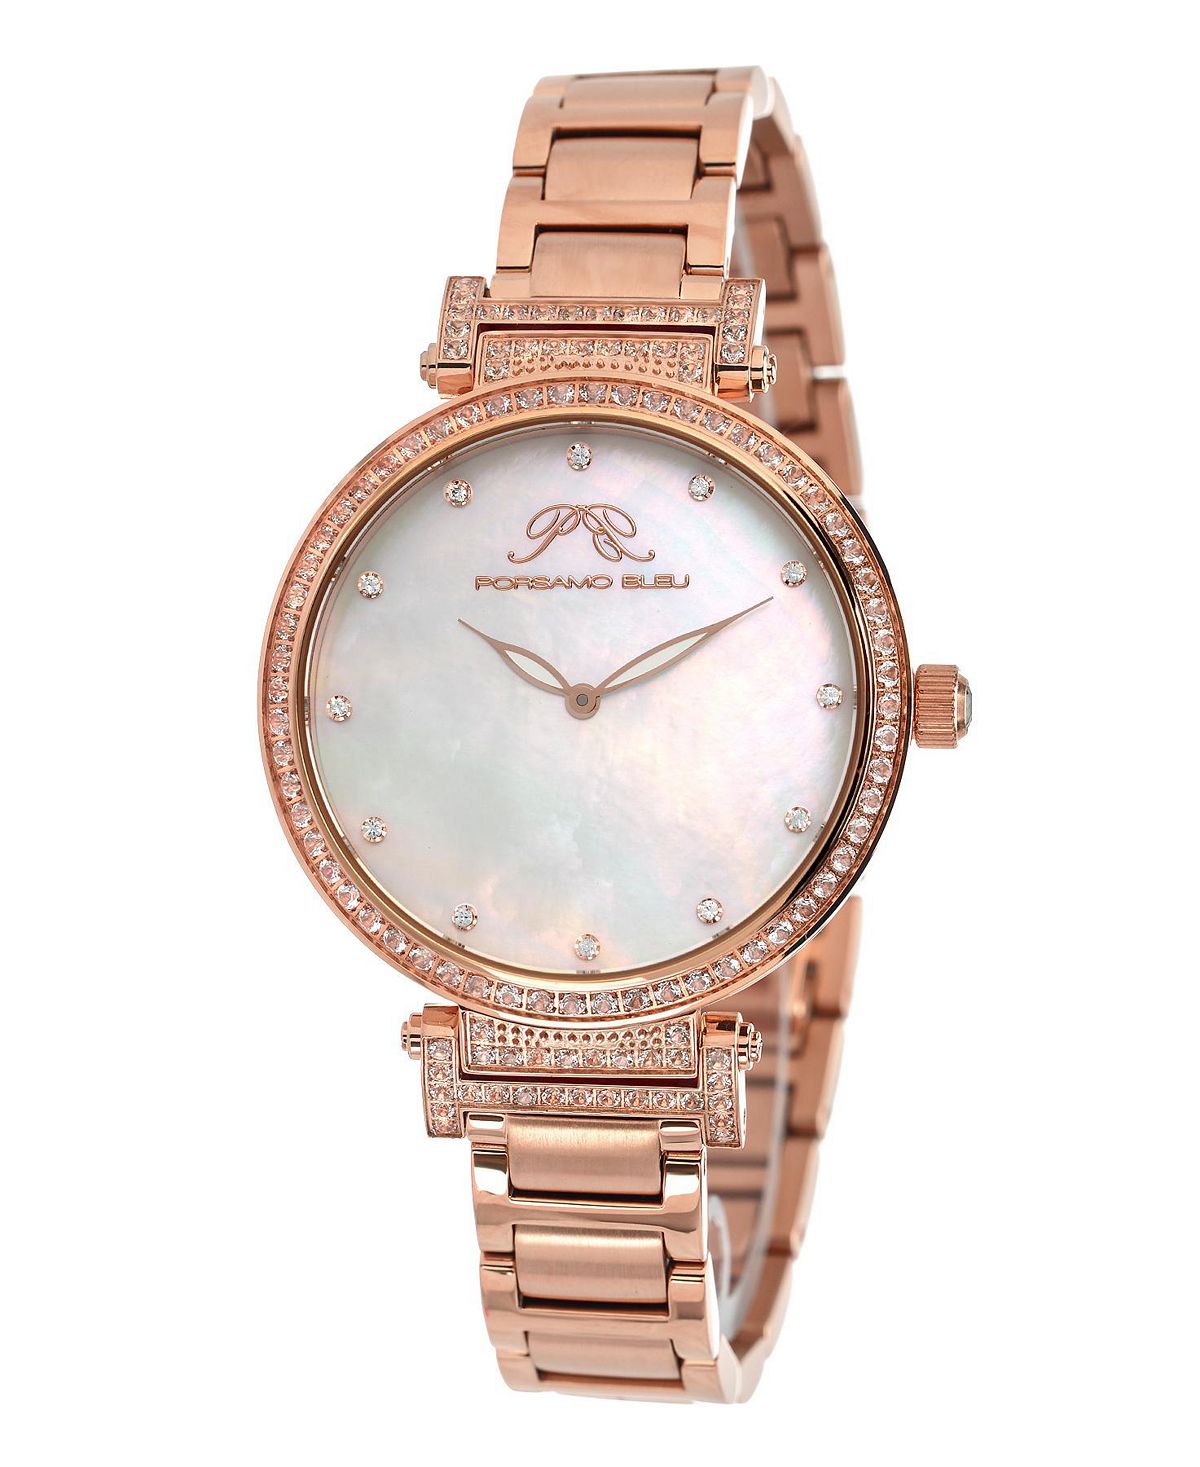 цена Женские часы Chantal с браслетом из нержавеющей стали 671CCHS Porsamo Bleu